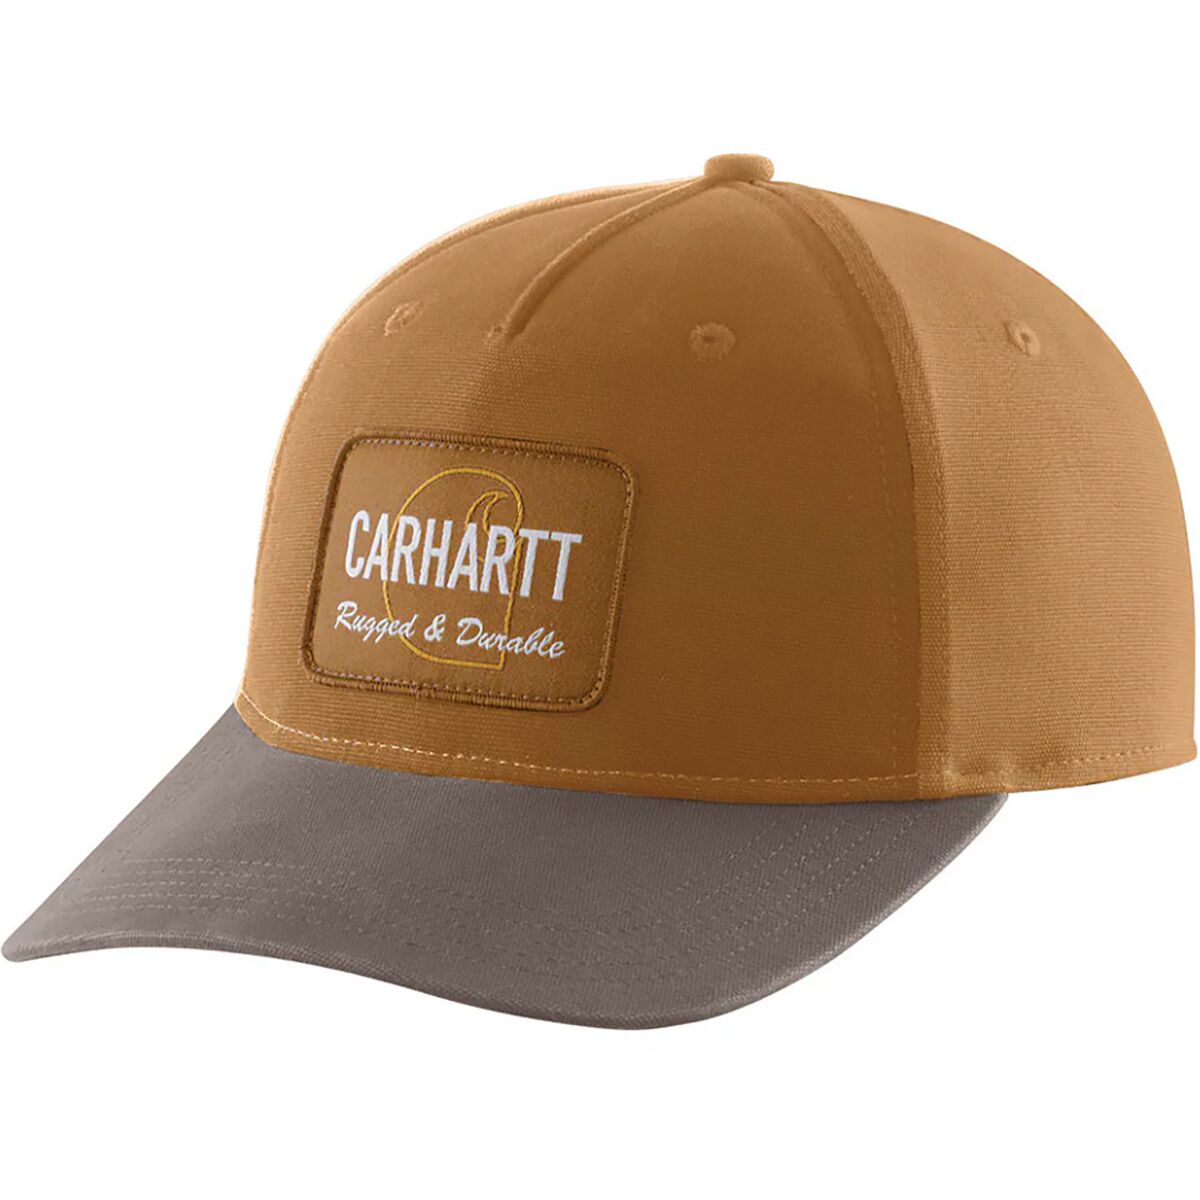 Carrhart Hats for Men